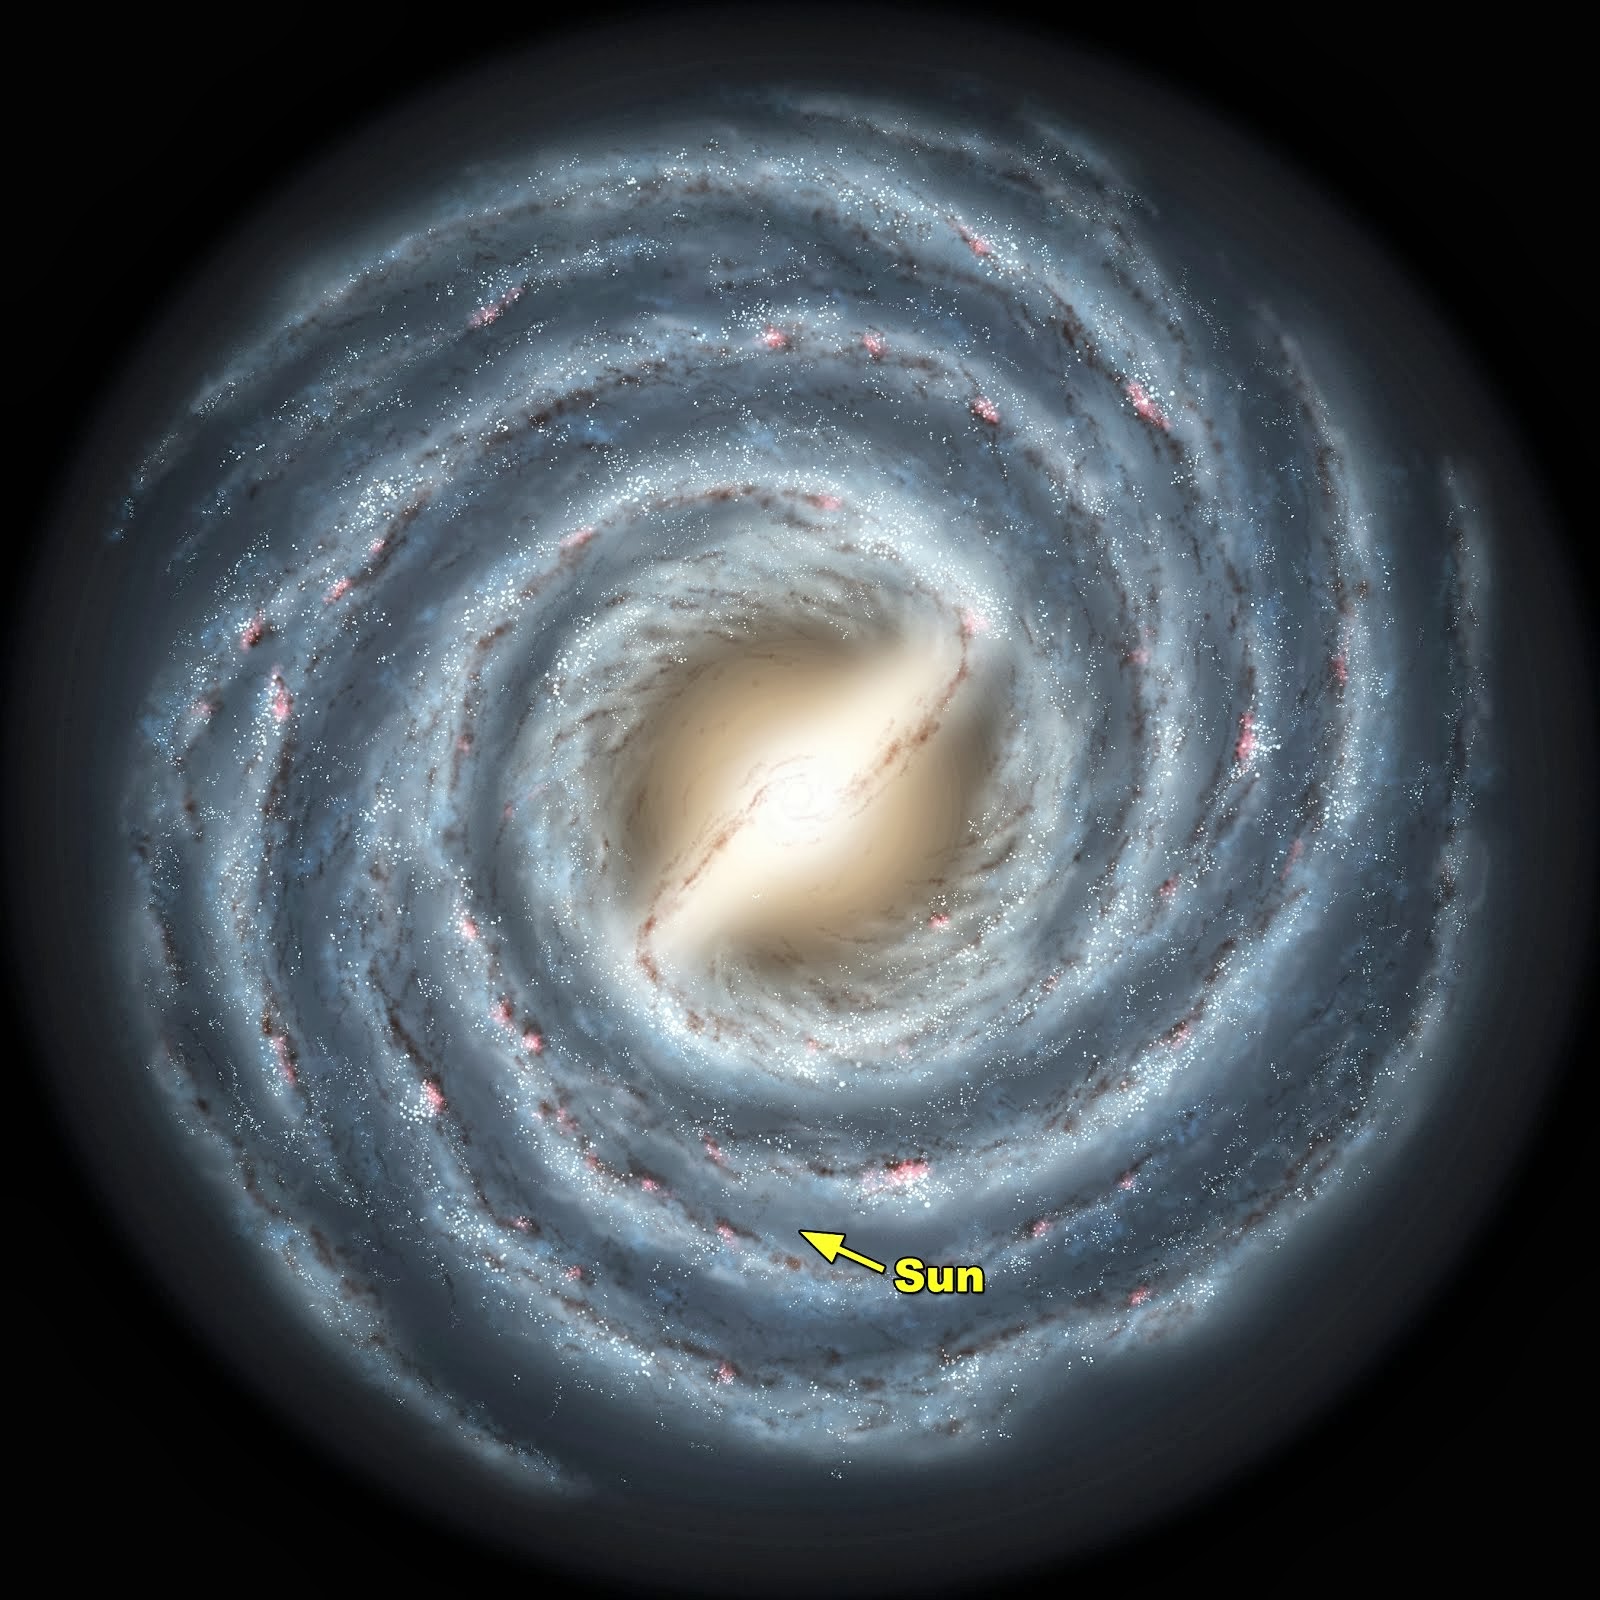 Le système solaire entier n’est qu’un grain de poussière, comparé à notre Galaxie la Voie lactée.